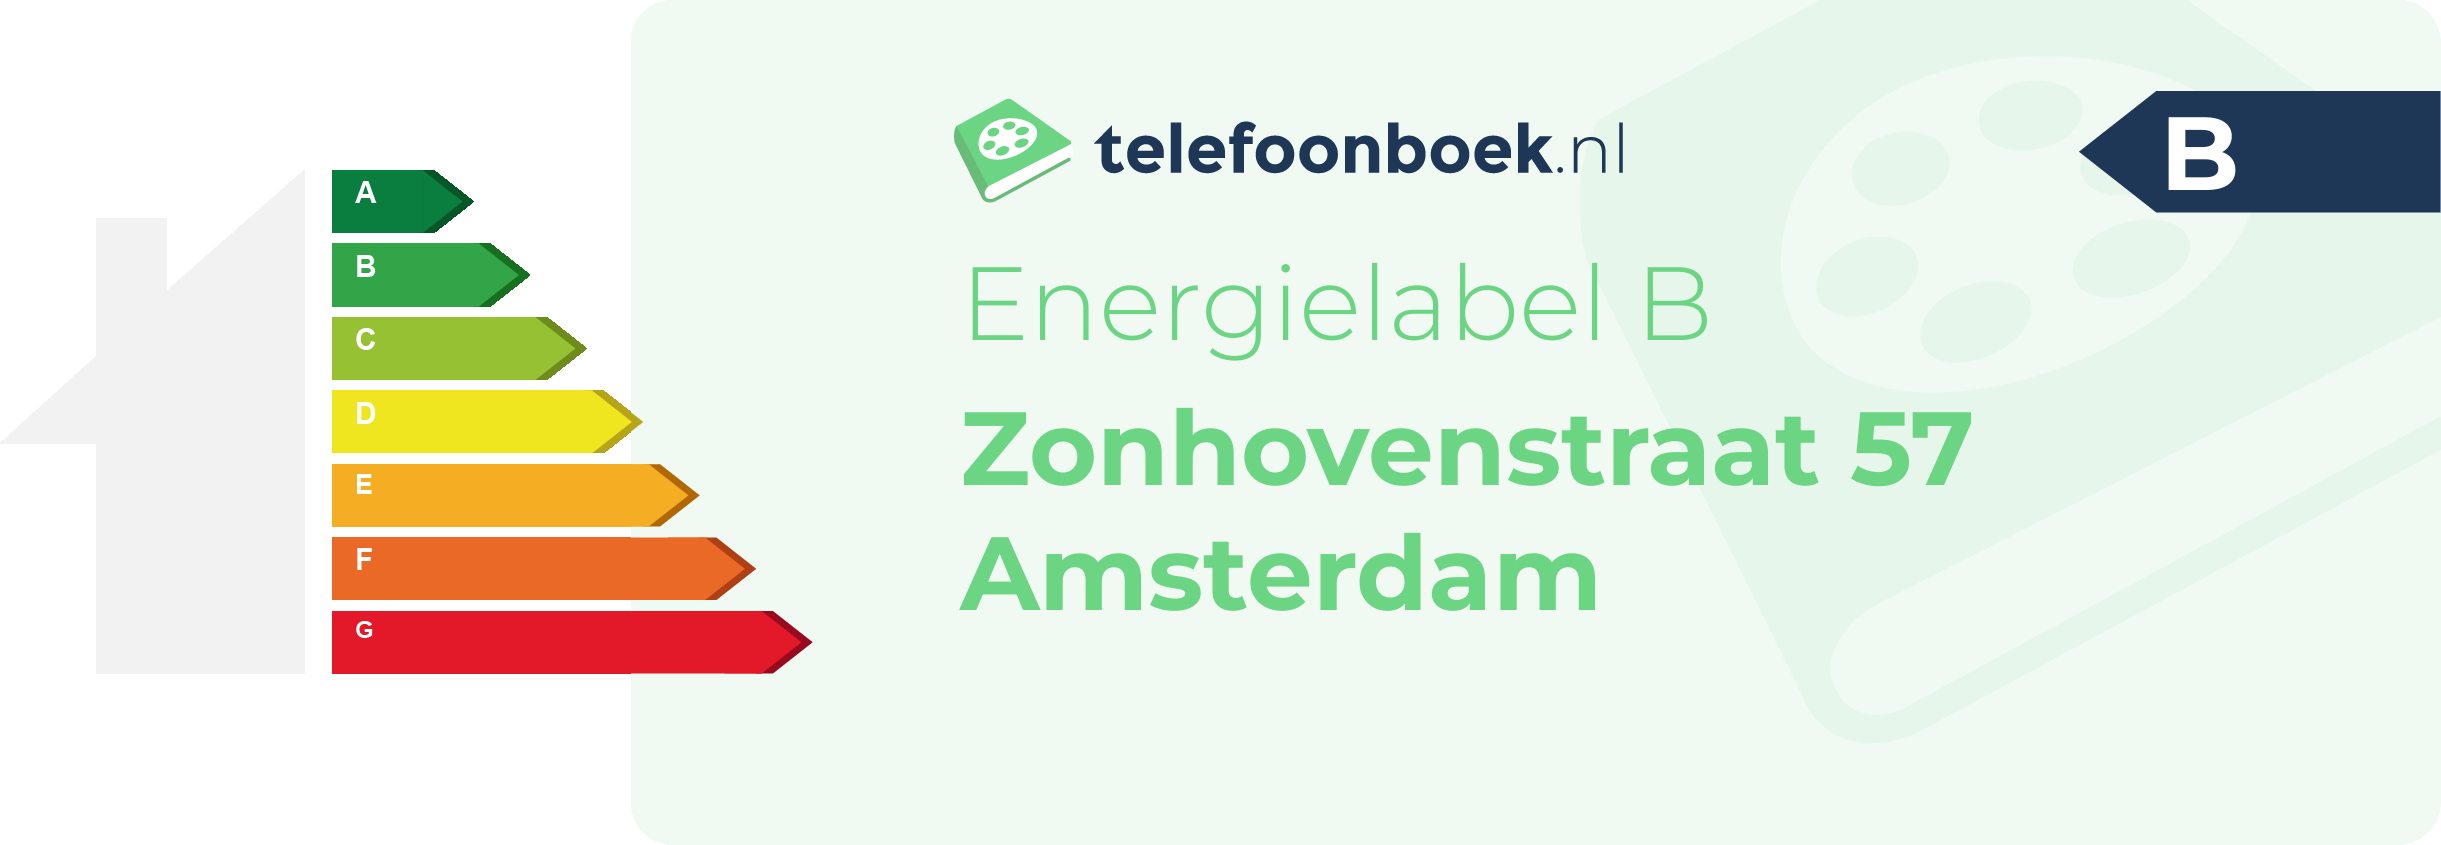 Energielabel Zonhovenstraat 57 Amsterdam